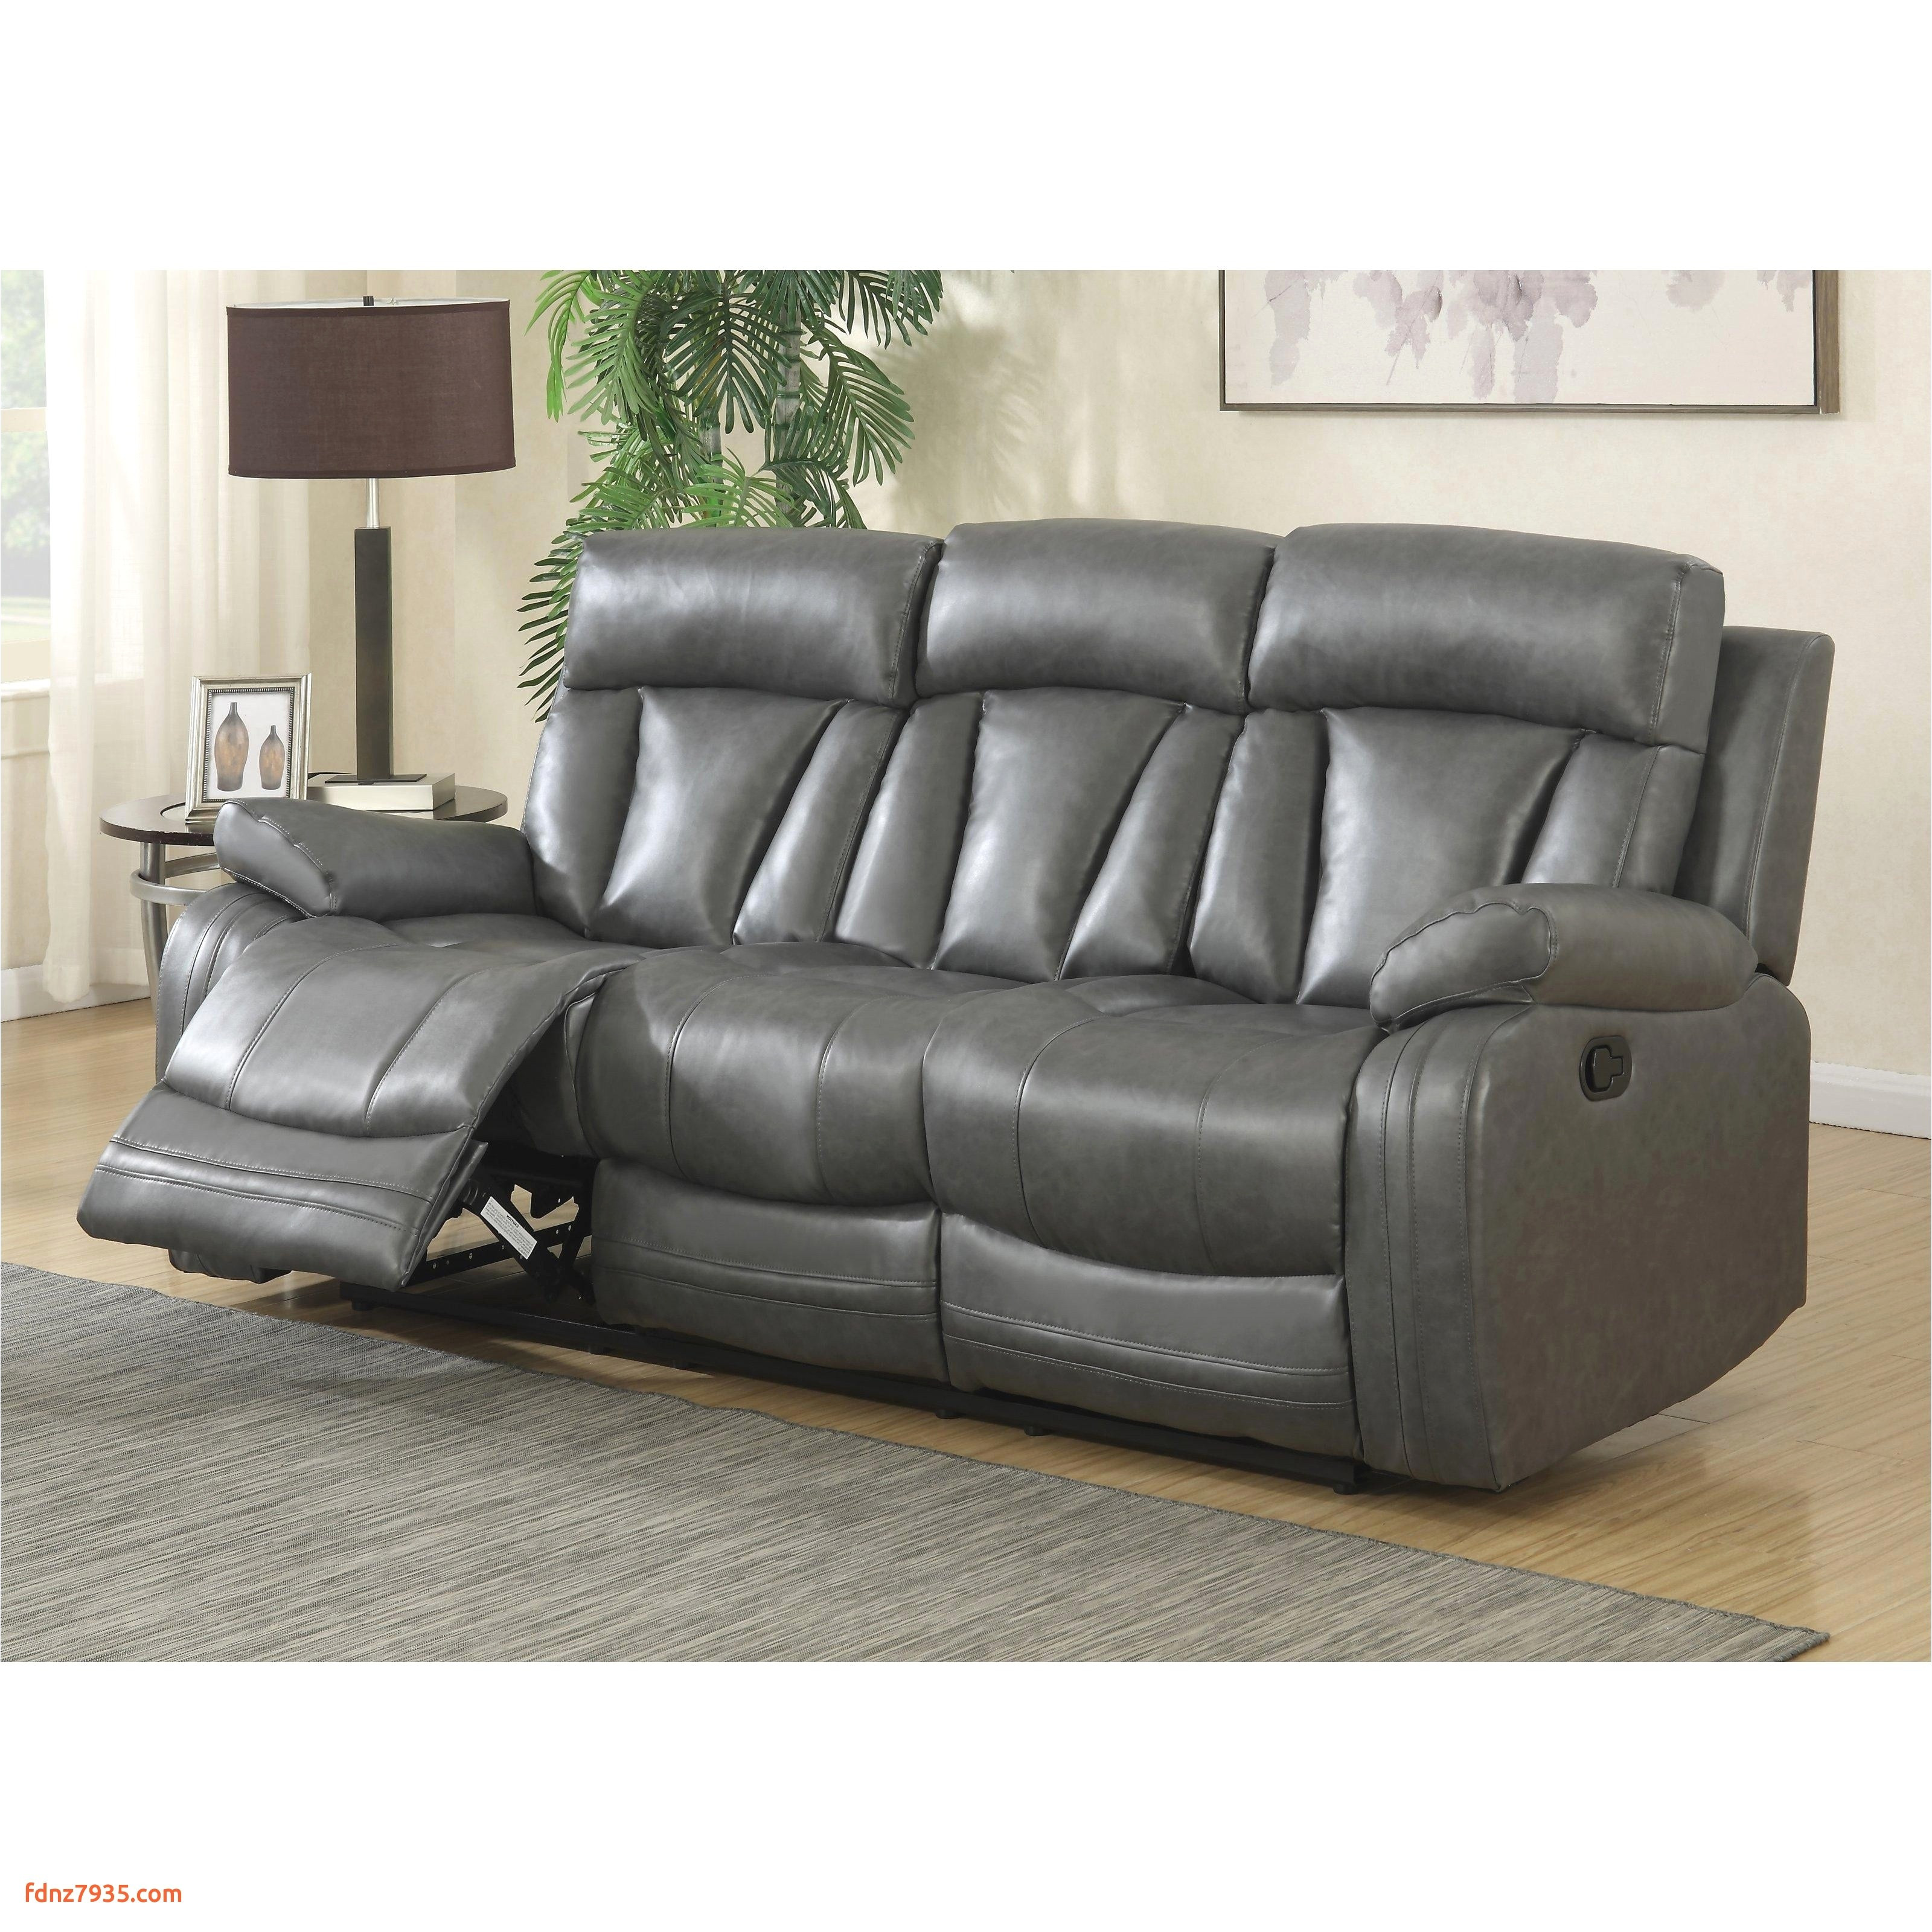 power reclining sofa and loveseat beautiful furniture gray reclining loveseat best tufted loveseat 0d